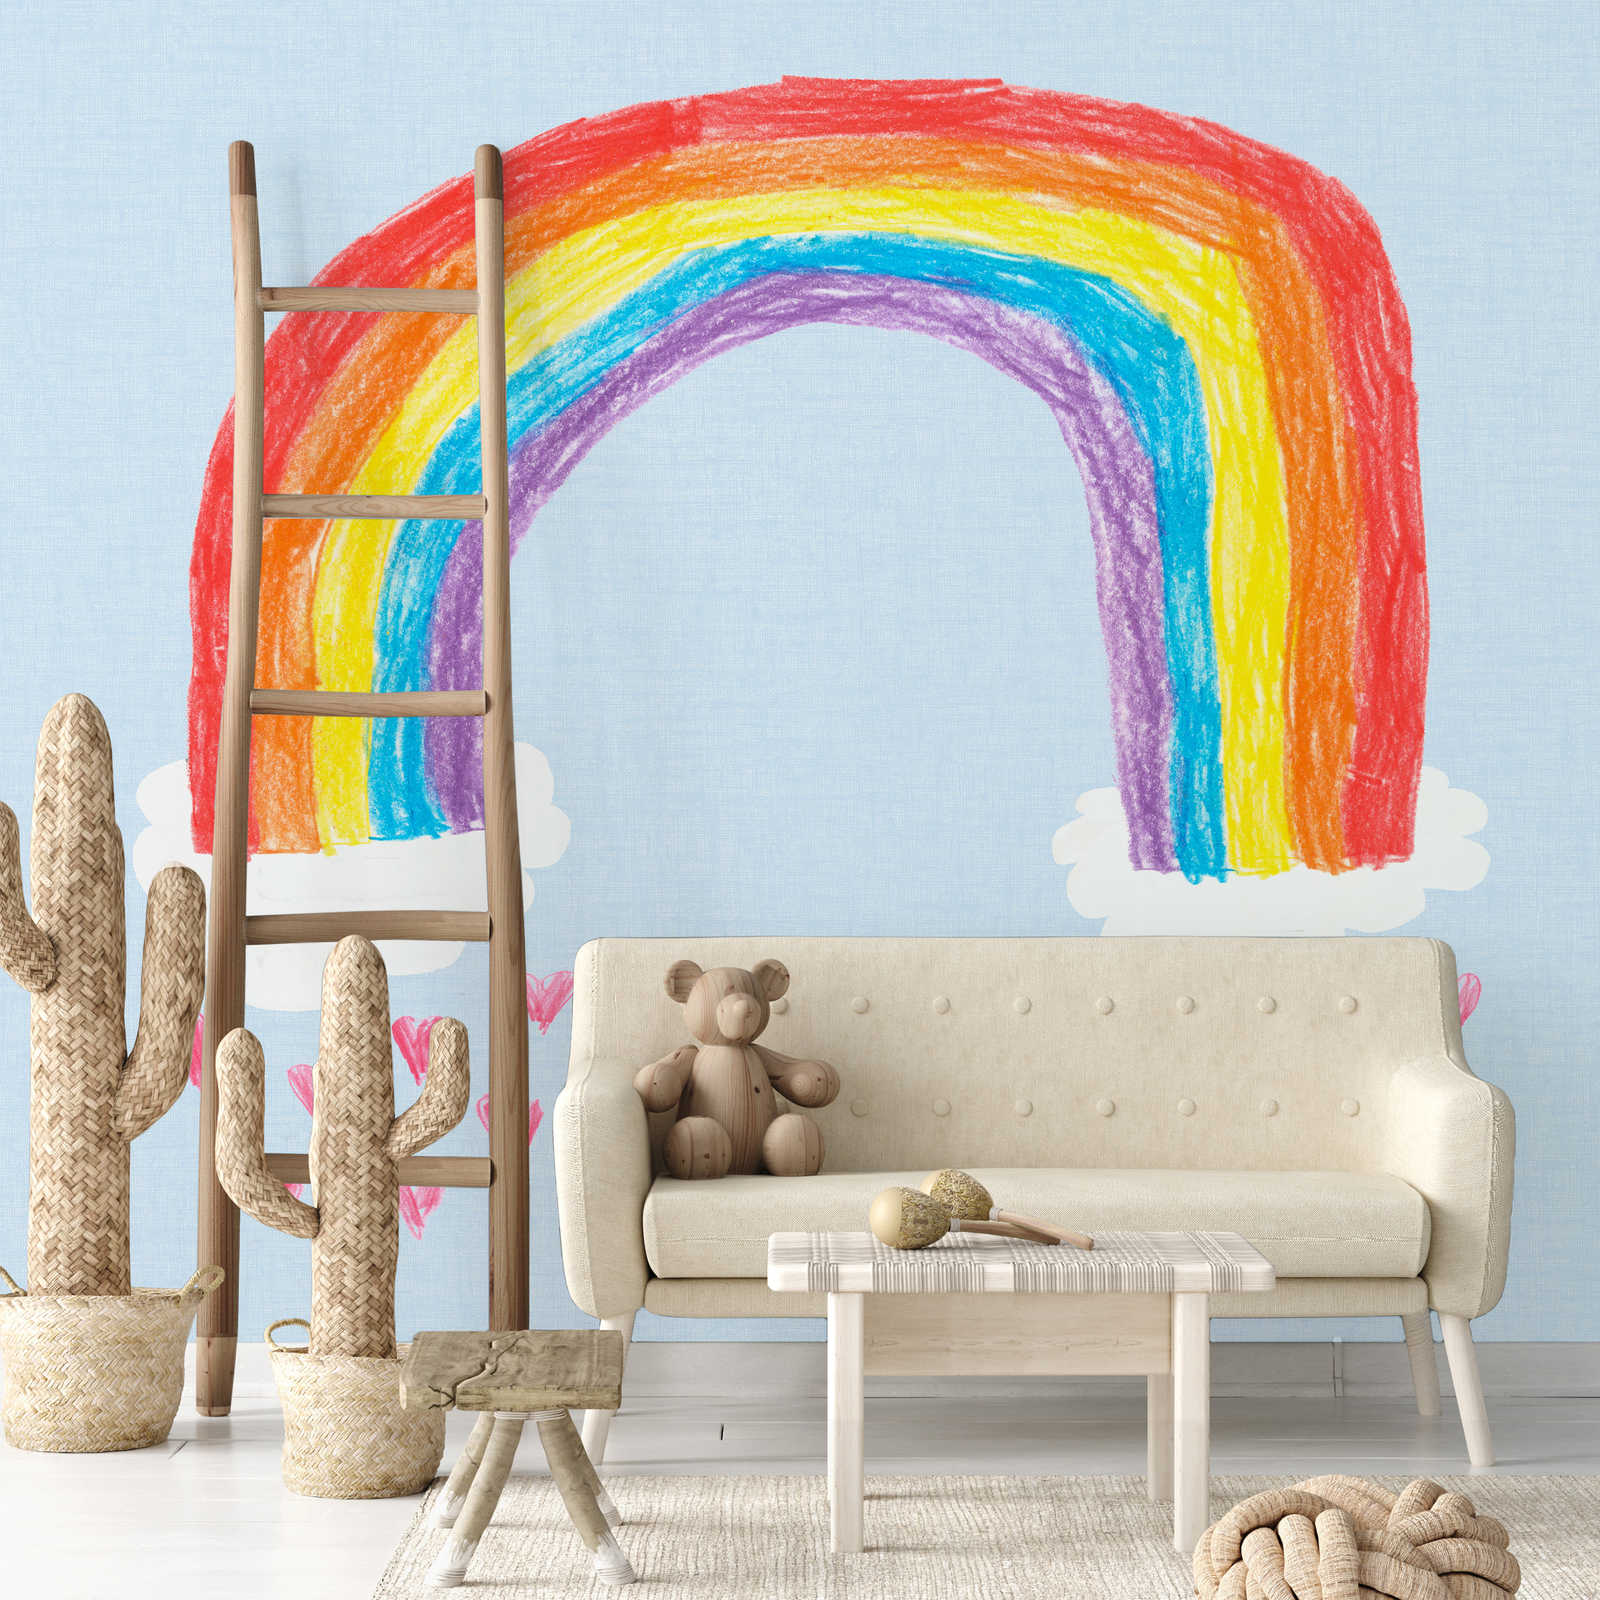             Papel pintado de arco iris para la habitación de los niños
        